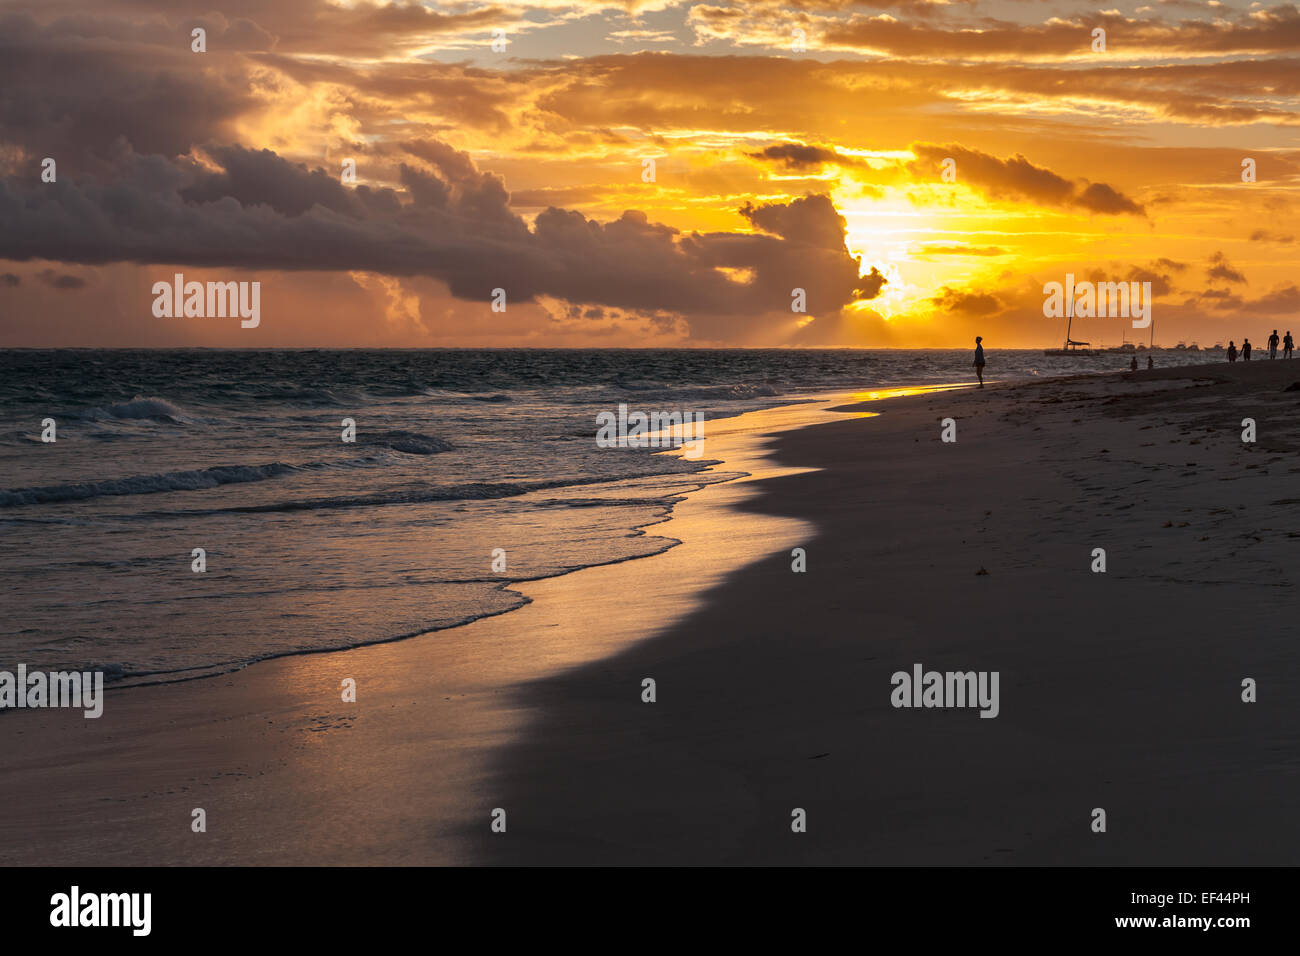 Beautiful sunrise landscape on Atlantic ocean coast. Dominican republic Stock Photo